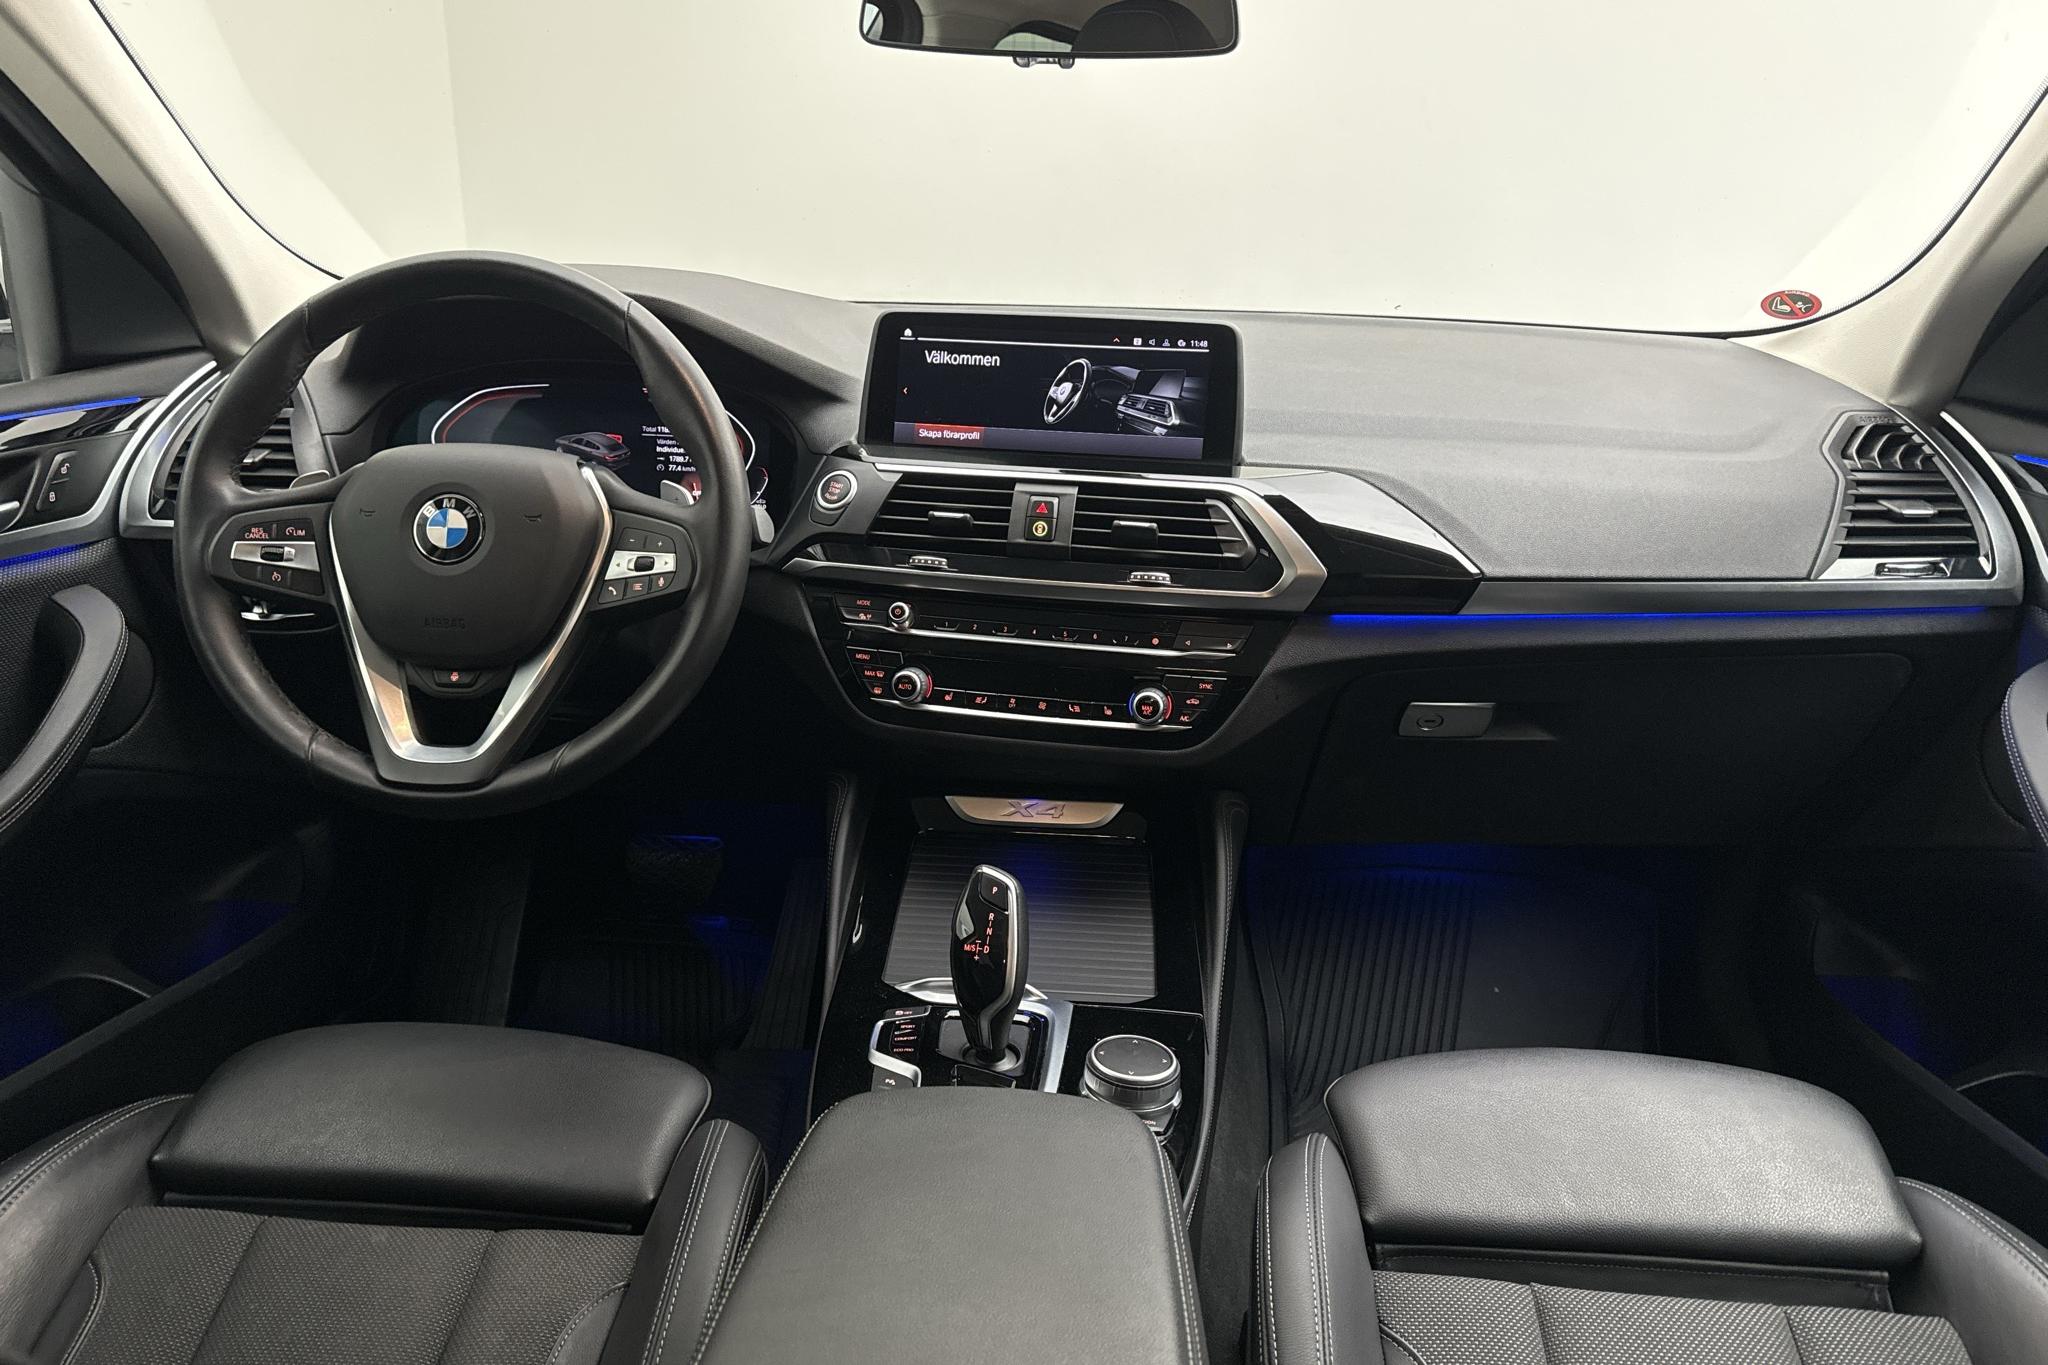 BMW X4 xDrive20d, G02 (190hk+11hk) - 118 980 km - Automatyczna - szary - 2021